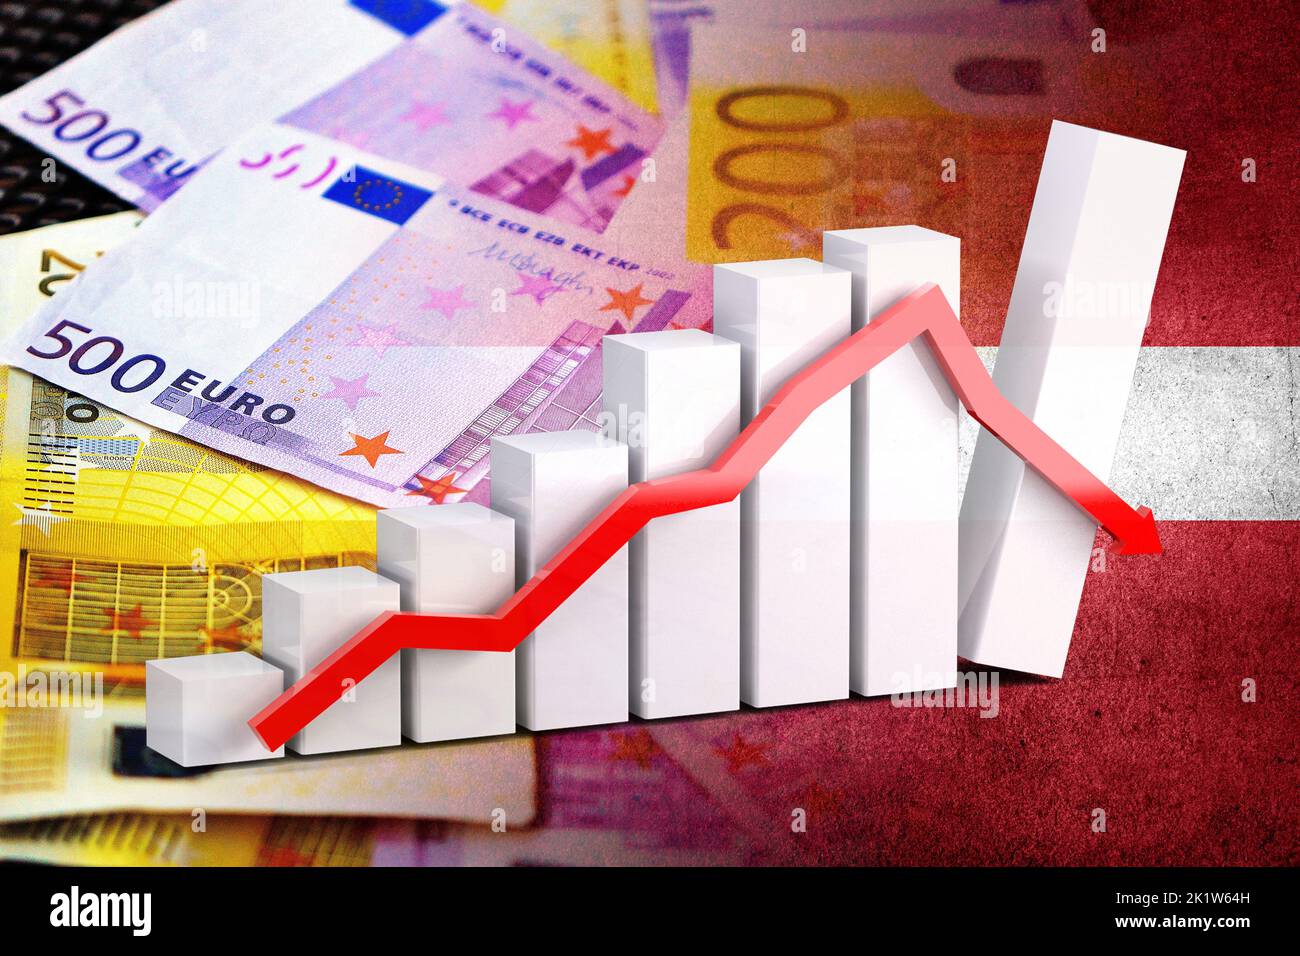 Wirtschaftsdiagramm: Abwärtspfeil, Euro-Cash-Banknoten und Lettland-Flagge (Geld, Wirtschaft, Unternehmen, Finanzen, Krise) Stockfoto